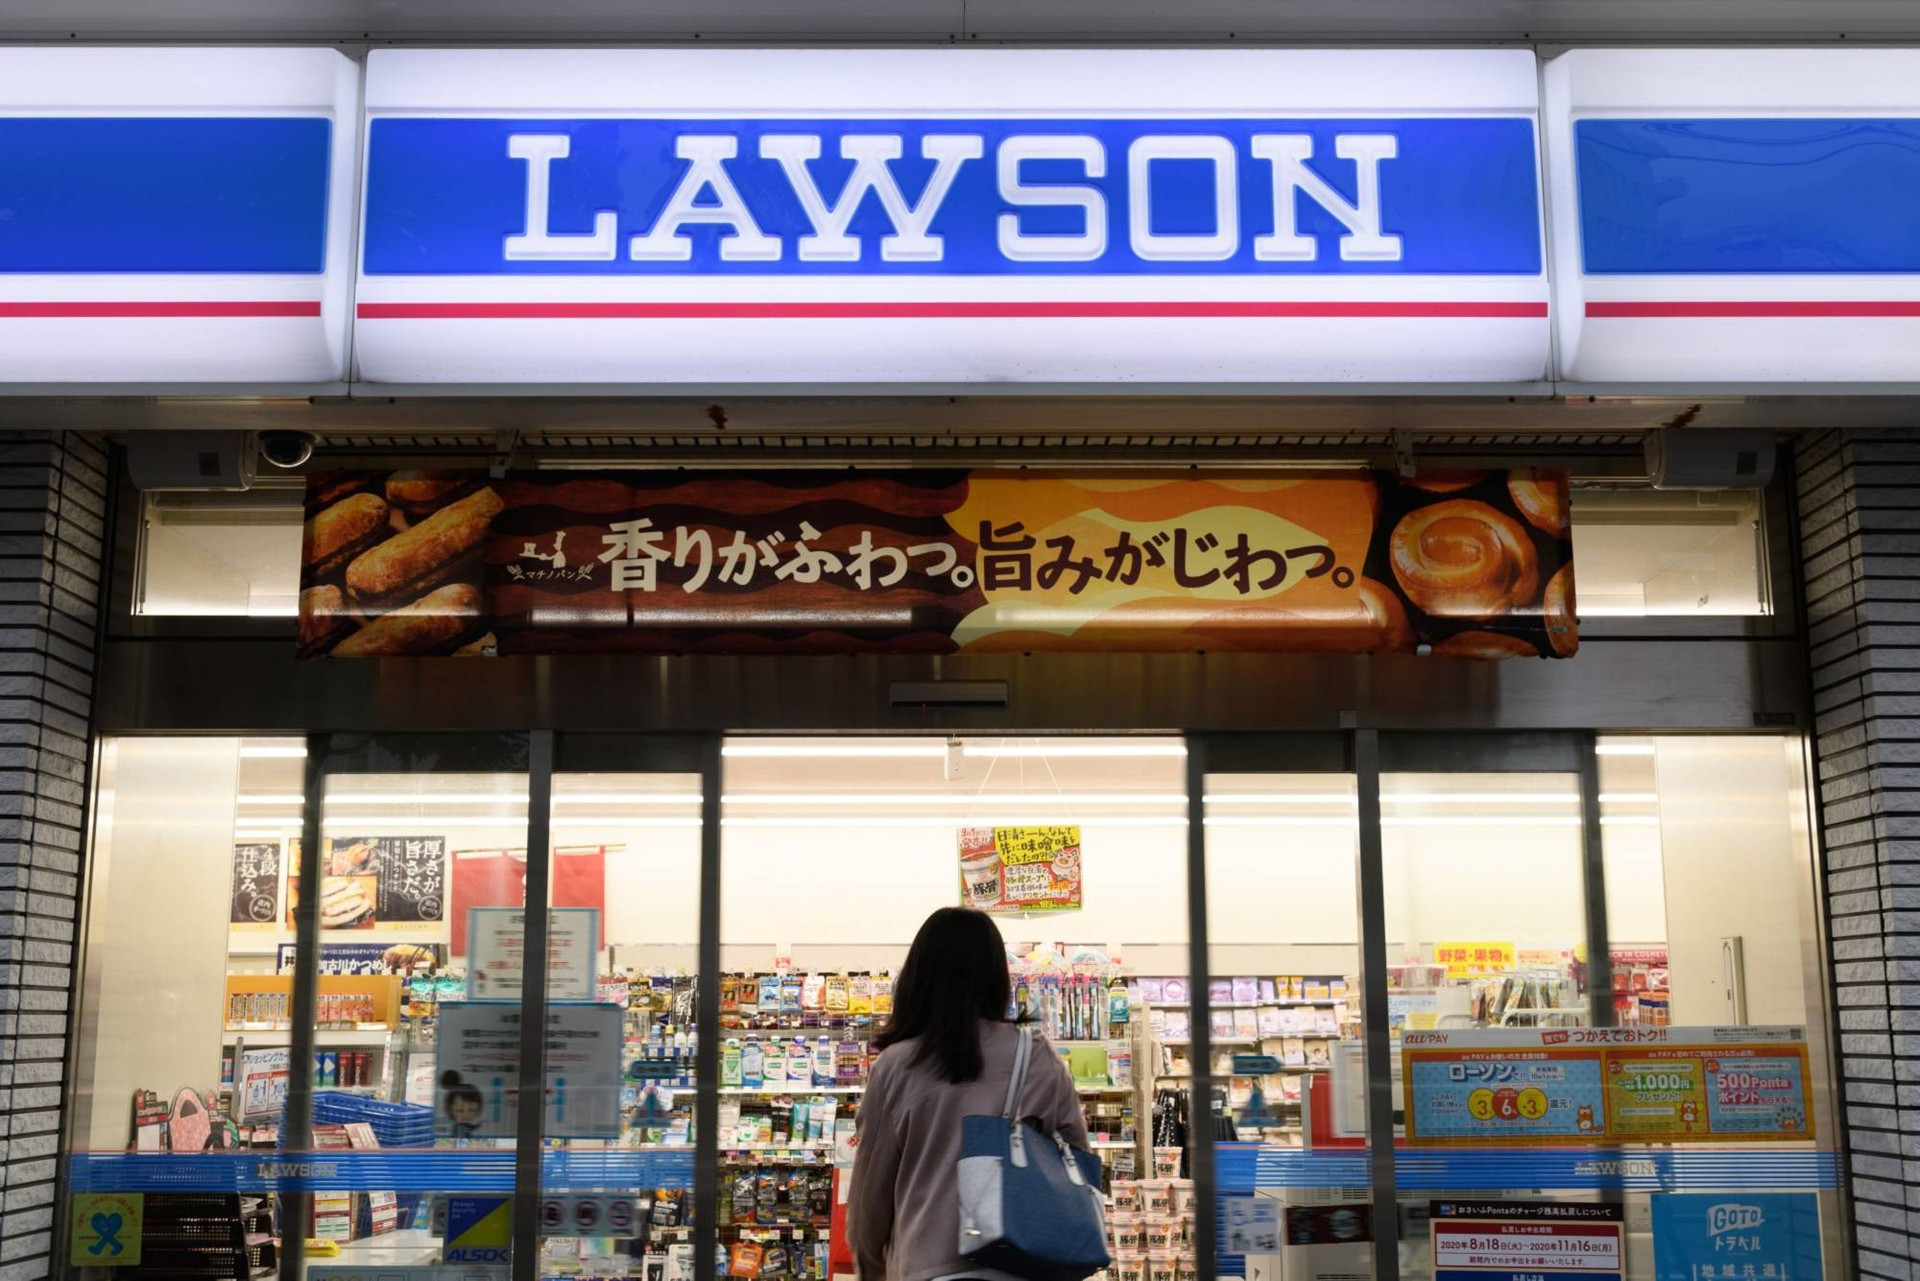 Tinh thần đáng nể của người Nhật: Thấy sóng thần ập đến, CEO chuỗi siêu thị không tăng giá bán, còn ra lệnh chuyển hết lương thực tới vùng bị thiên tai phát miễn phí - Ảnh 3.